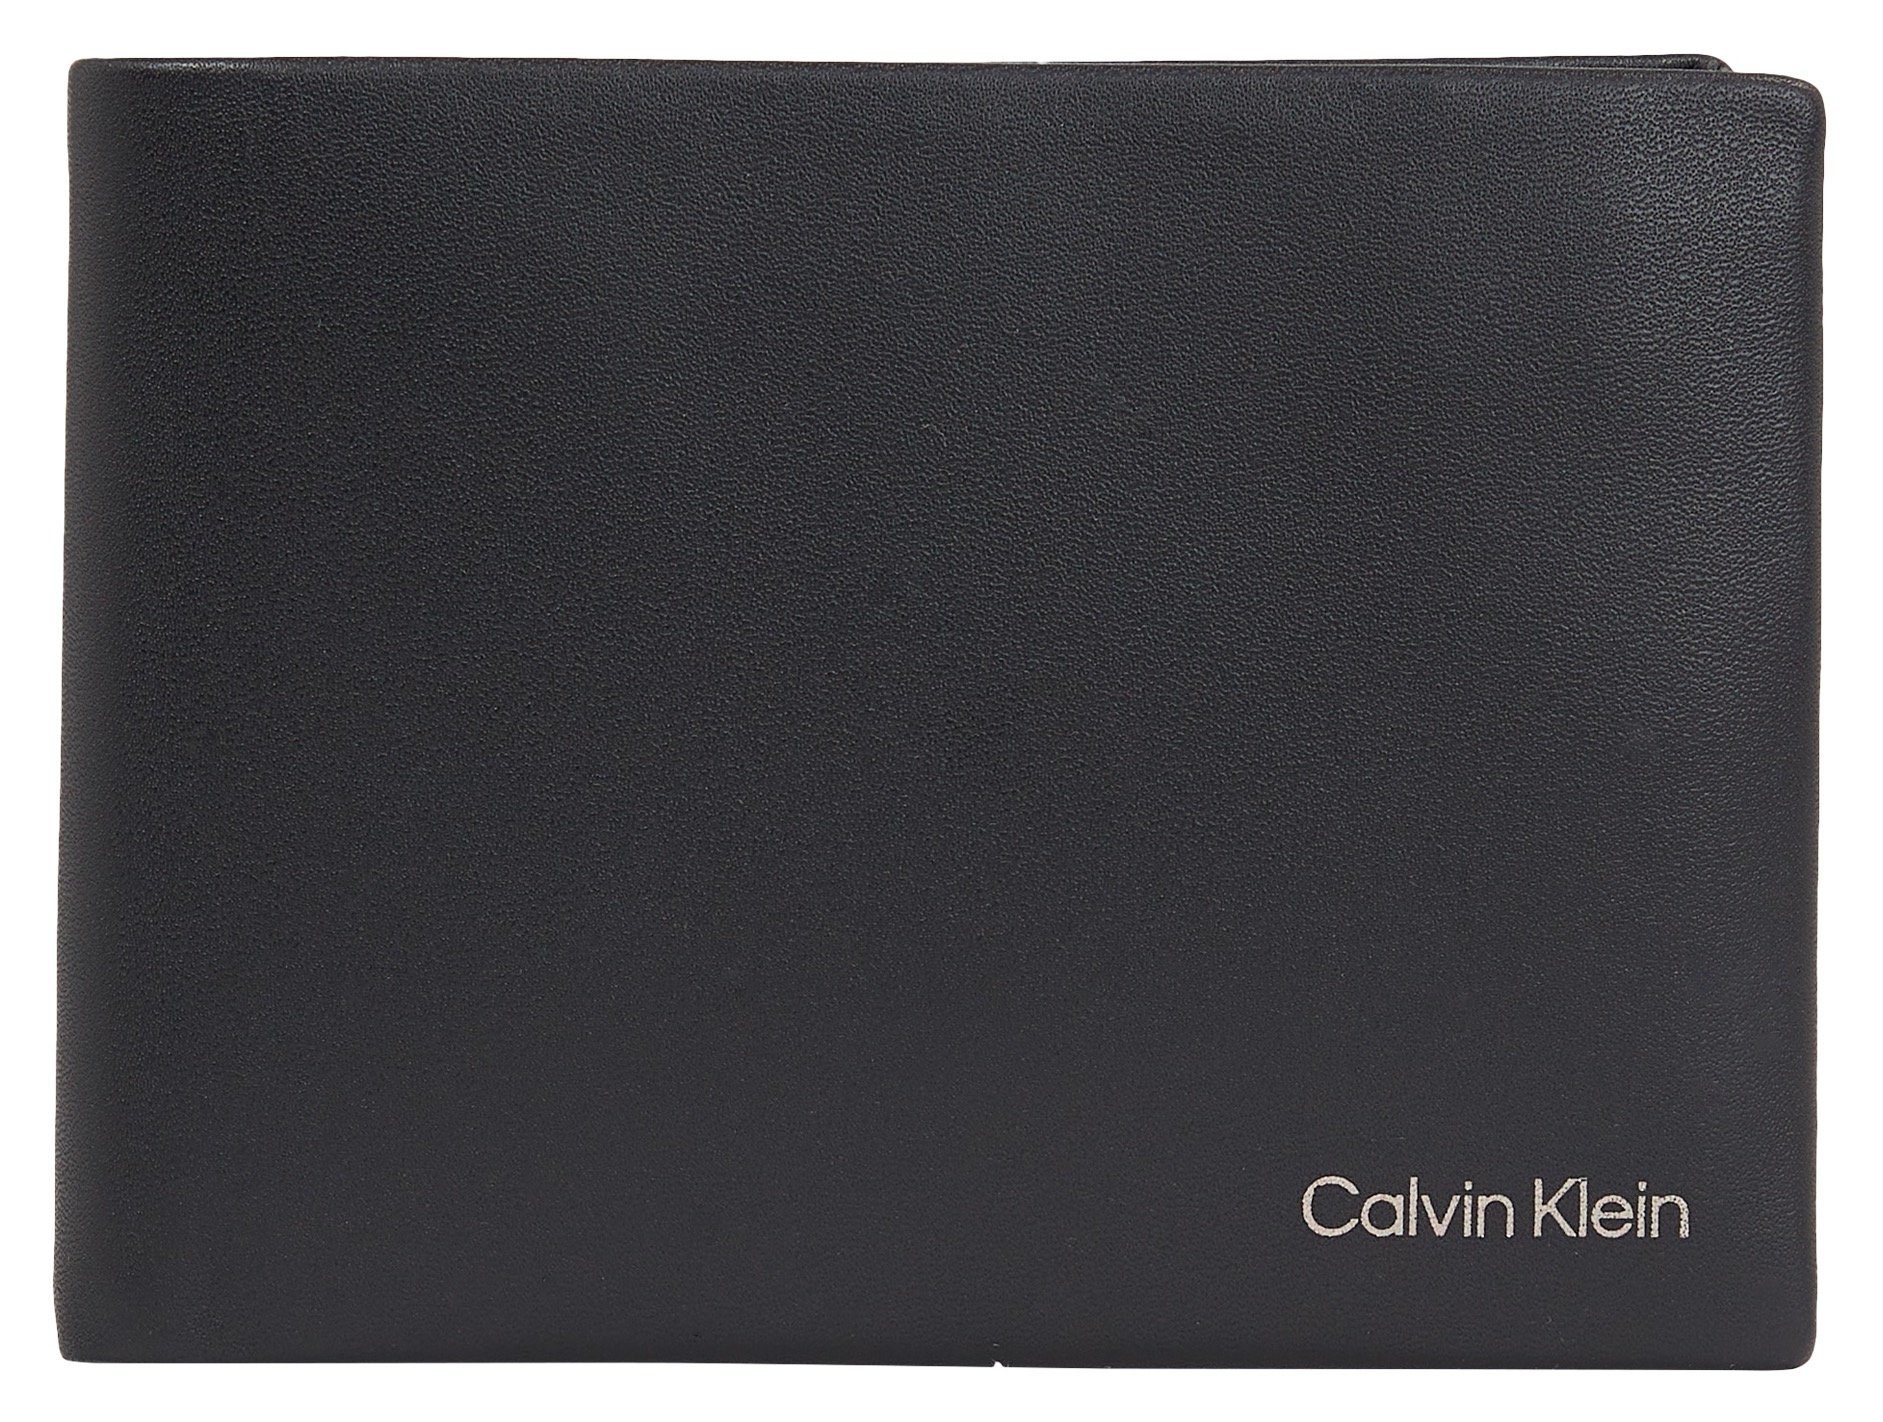 Klein L, Stil CONCISE Calvin BIFOLD in Geldbörse 5CC CK schlichtem W/COIN